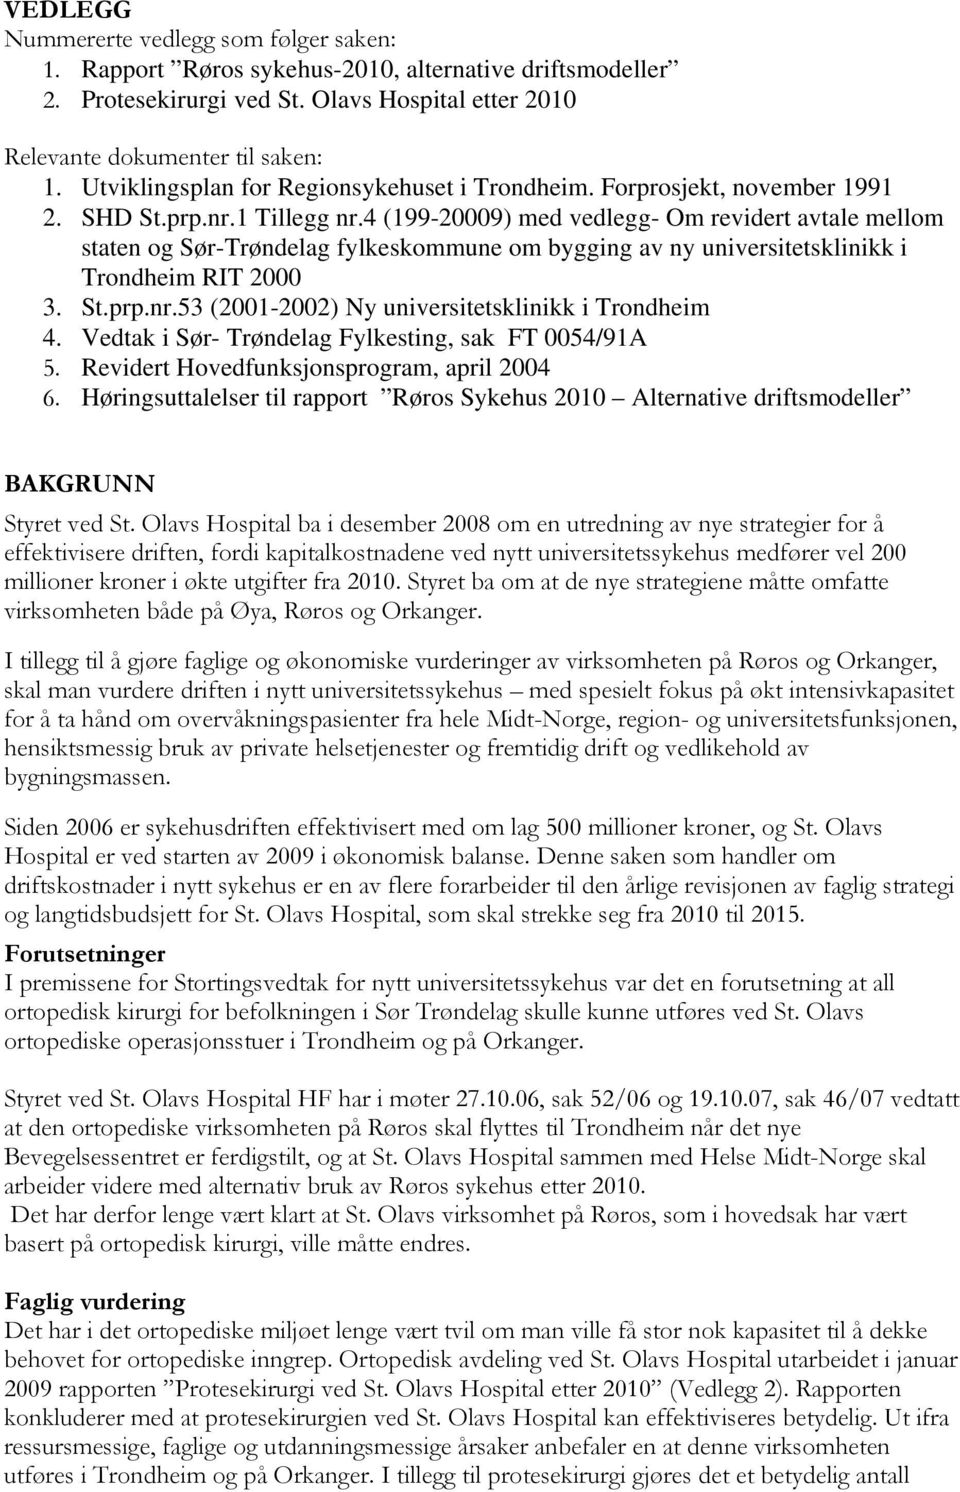 4 (199-20009) med vedlegg- Om revidert avtale mellom staten og Sør-Trøndelag fylkeskommune om bygging av ny universitetsklinikk i Trondheim RIT 2000 3. St.prp.nr.